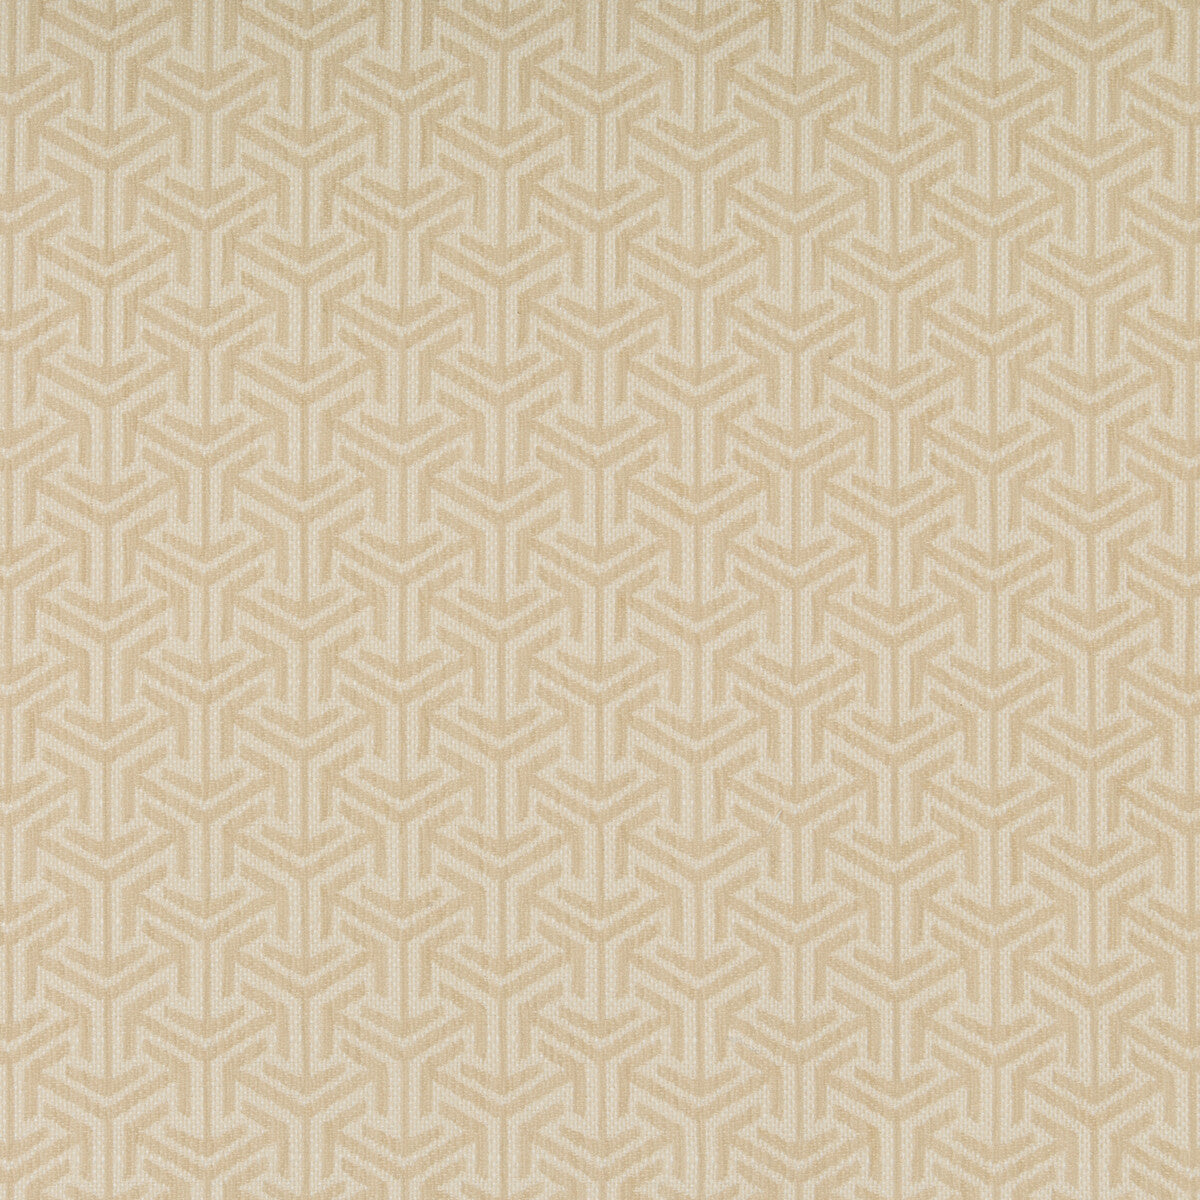 Kravet Design fabric in 35715-1 color - pattern 35715.1.0 - by Kravet Design